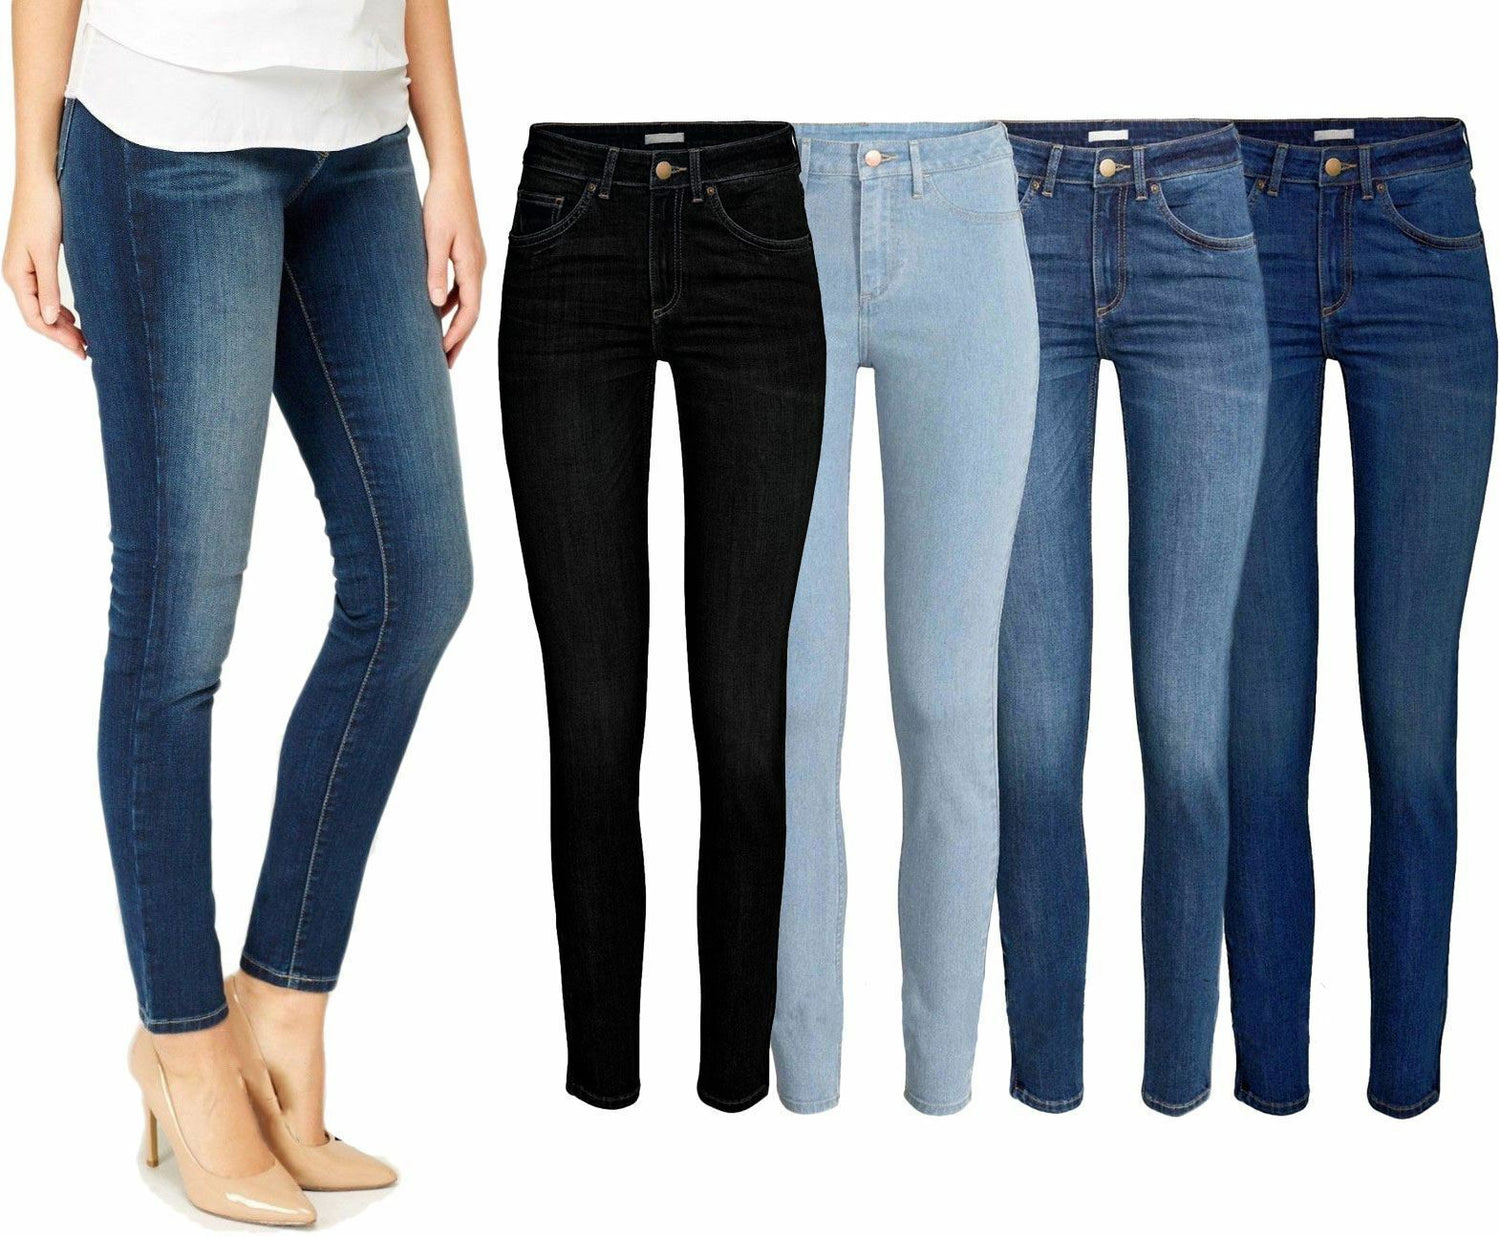 Ladies Skinny Fit Jeans.